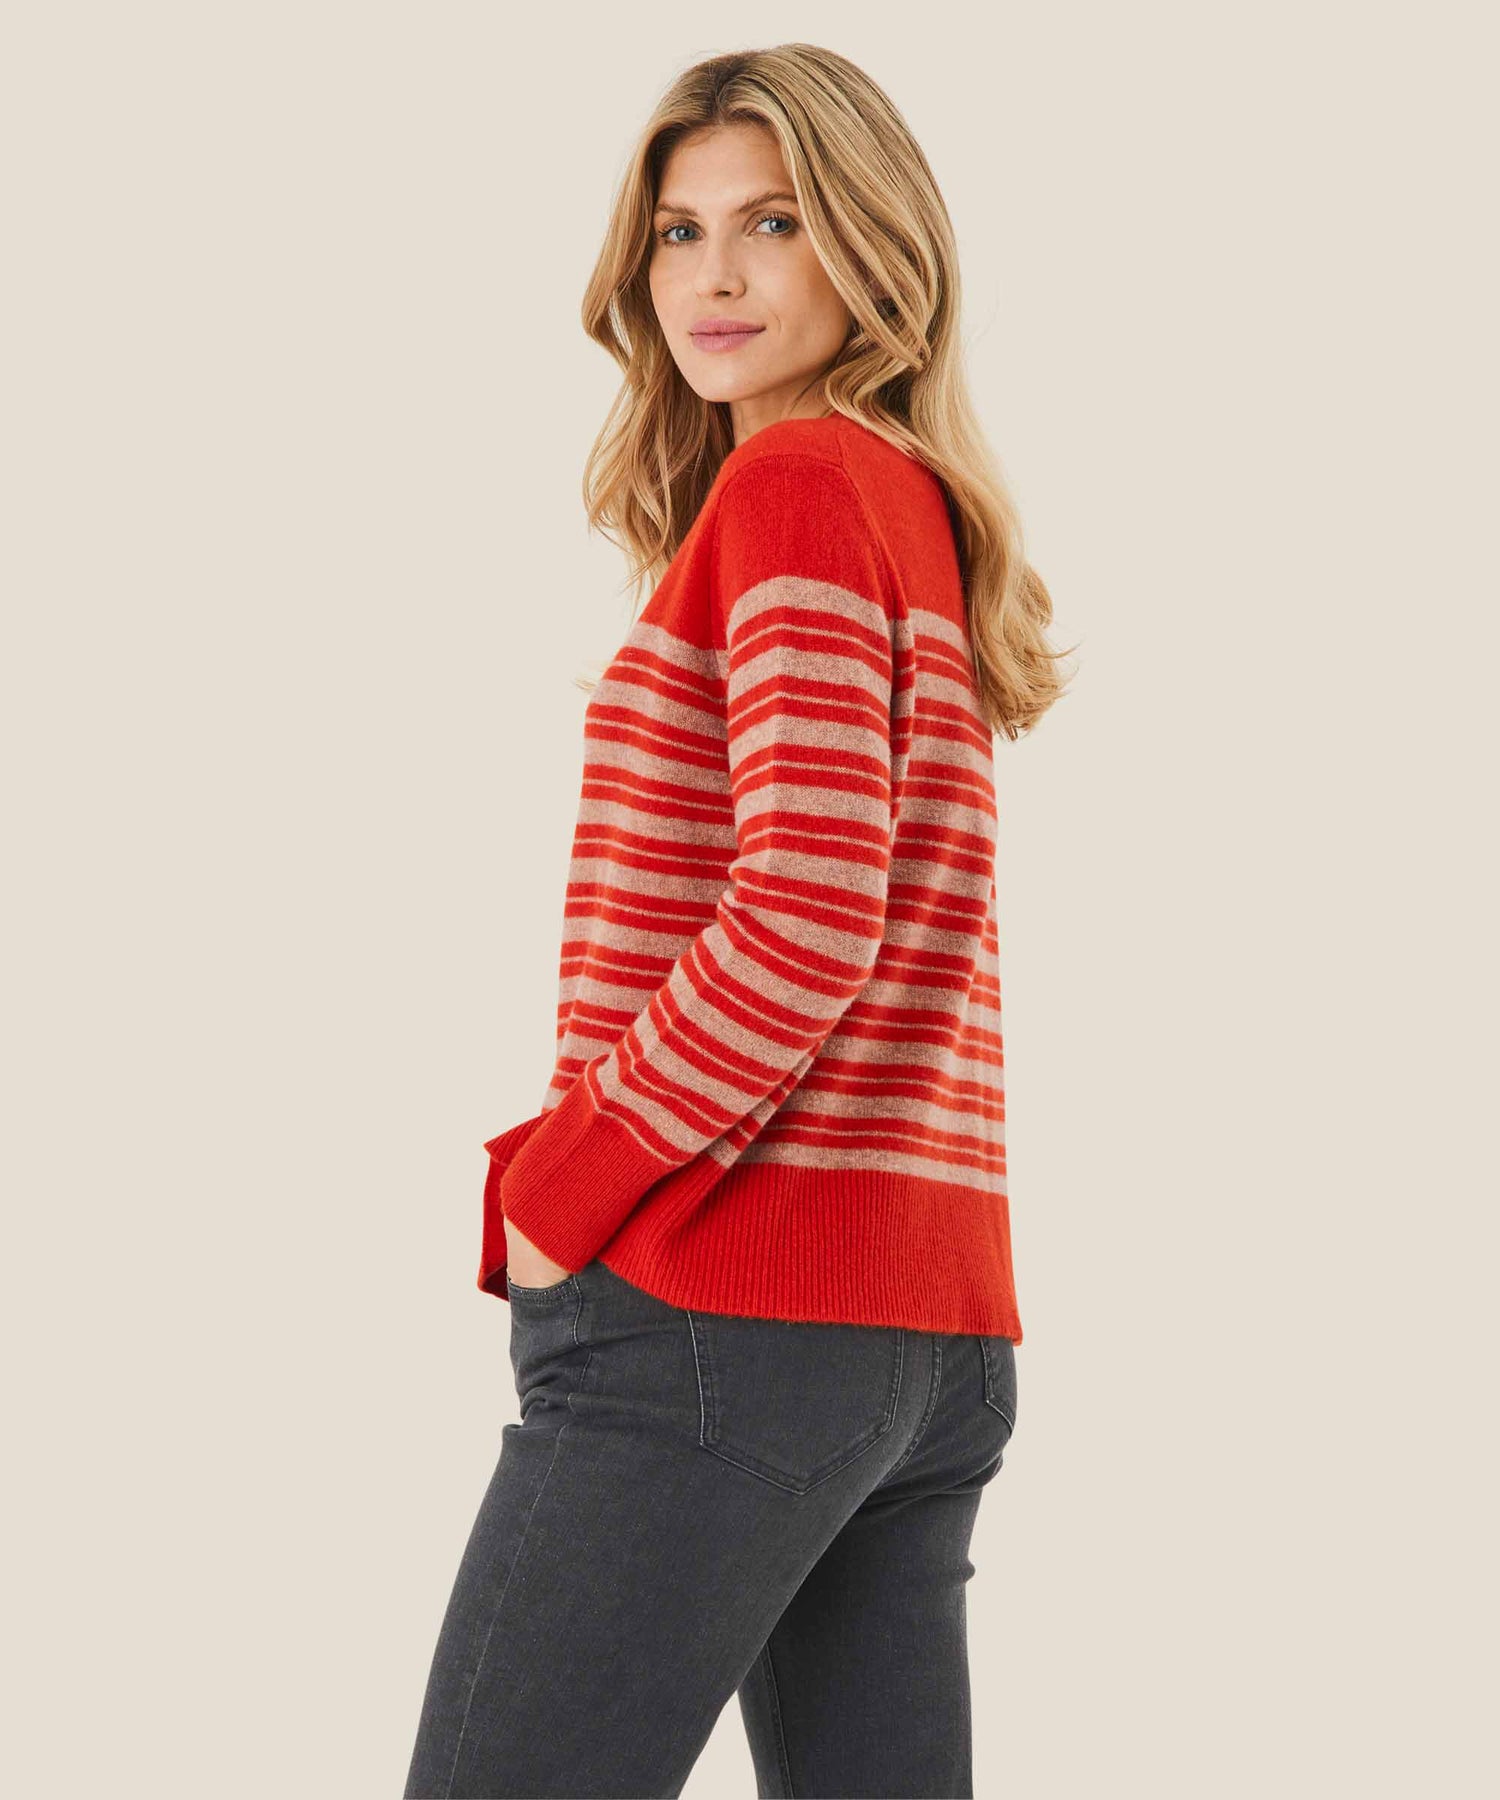 Masai Fonny Sweater